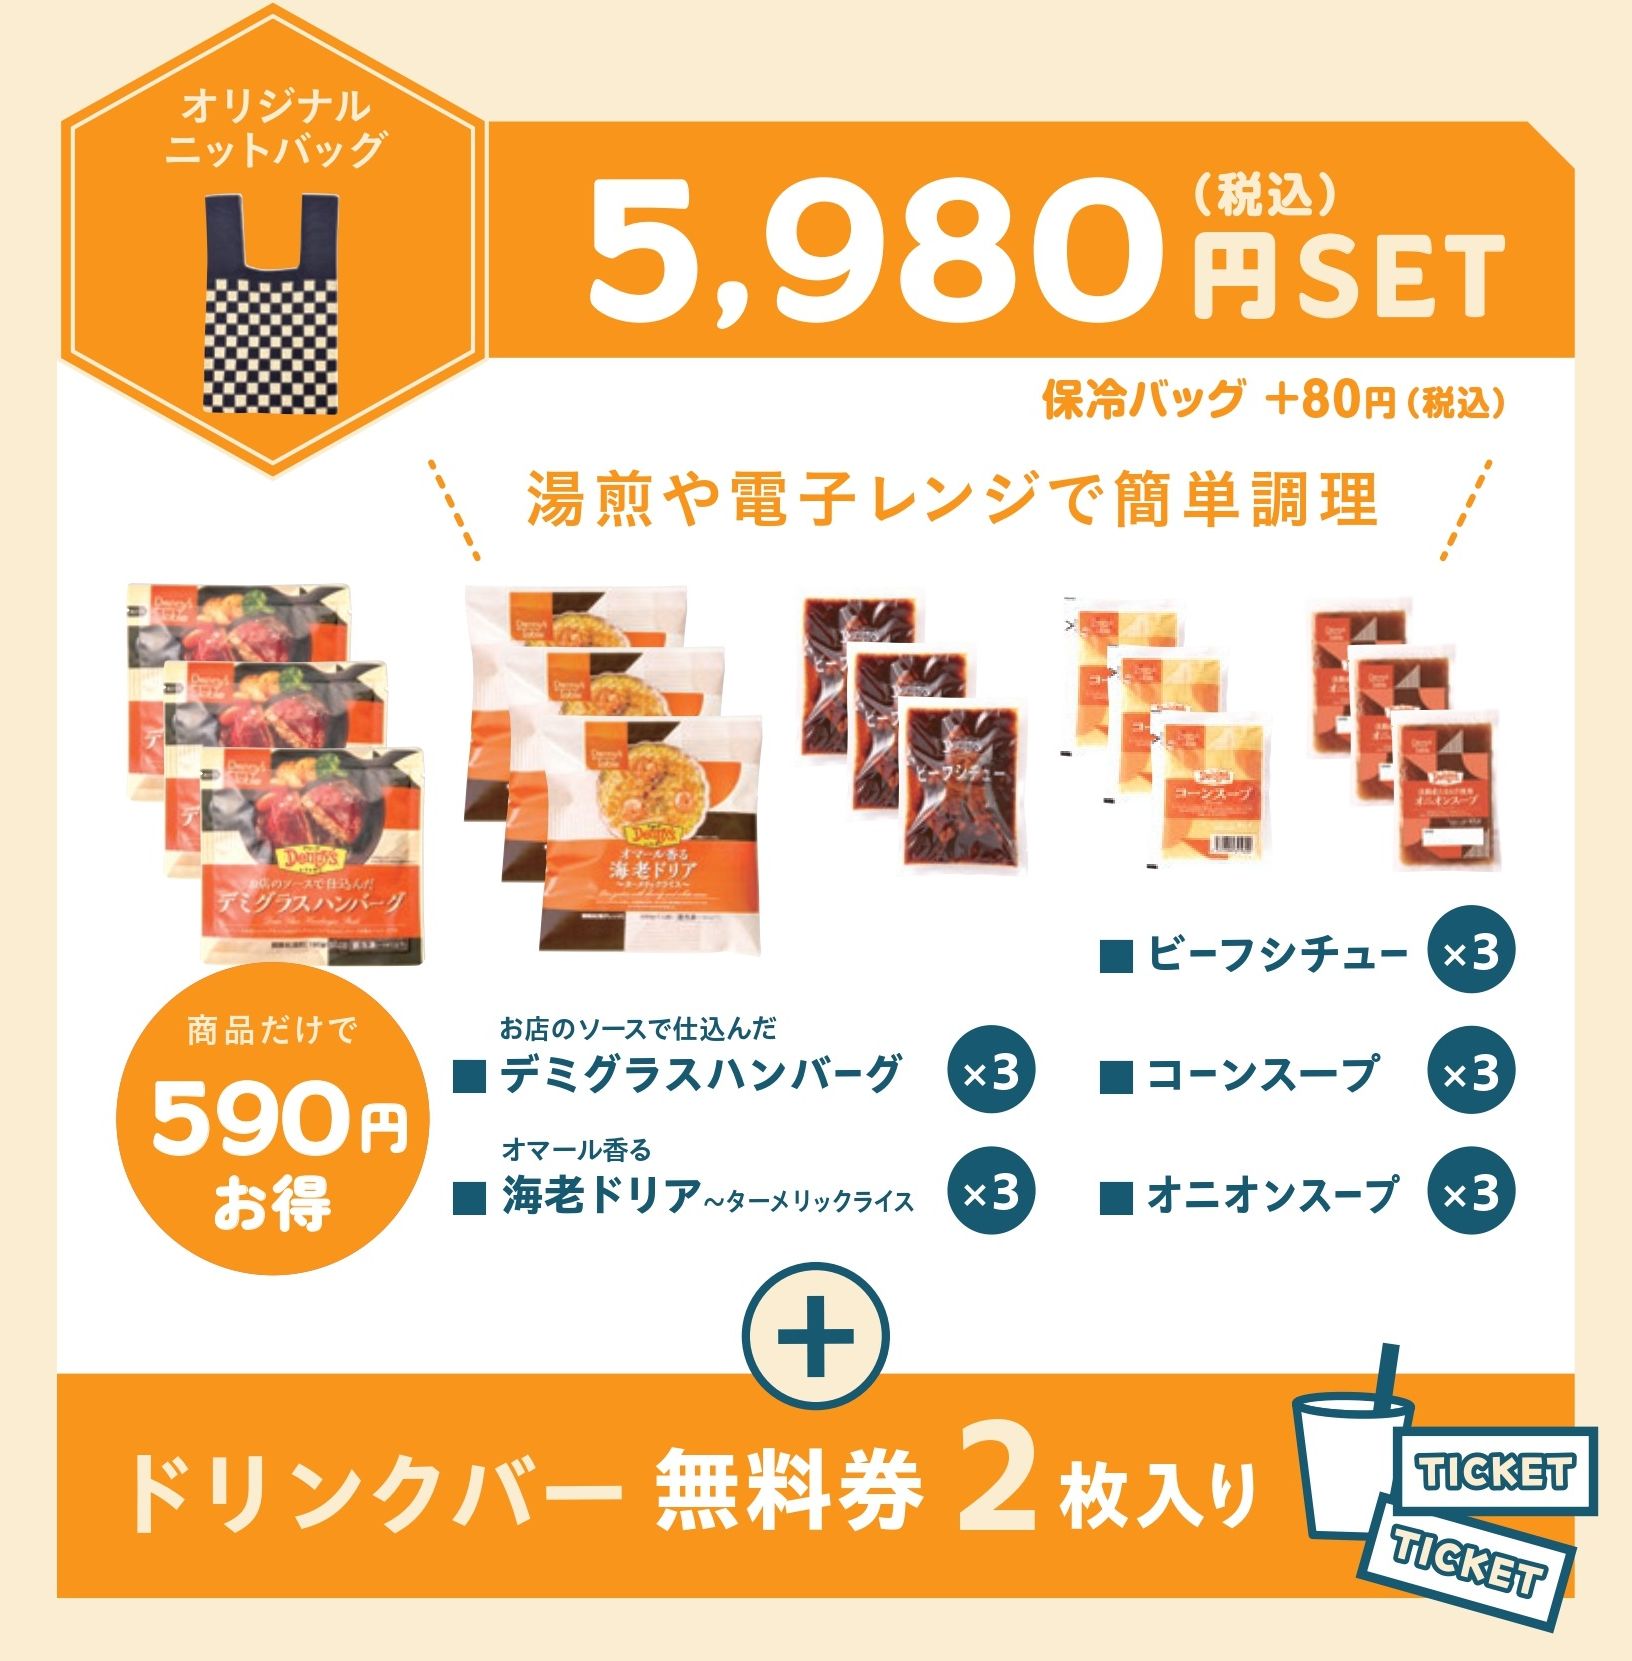 デニーズの2024年福袋「オリジナルニットバッグ付き福袋」5980円SET